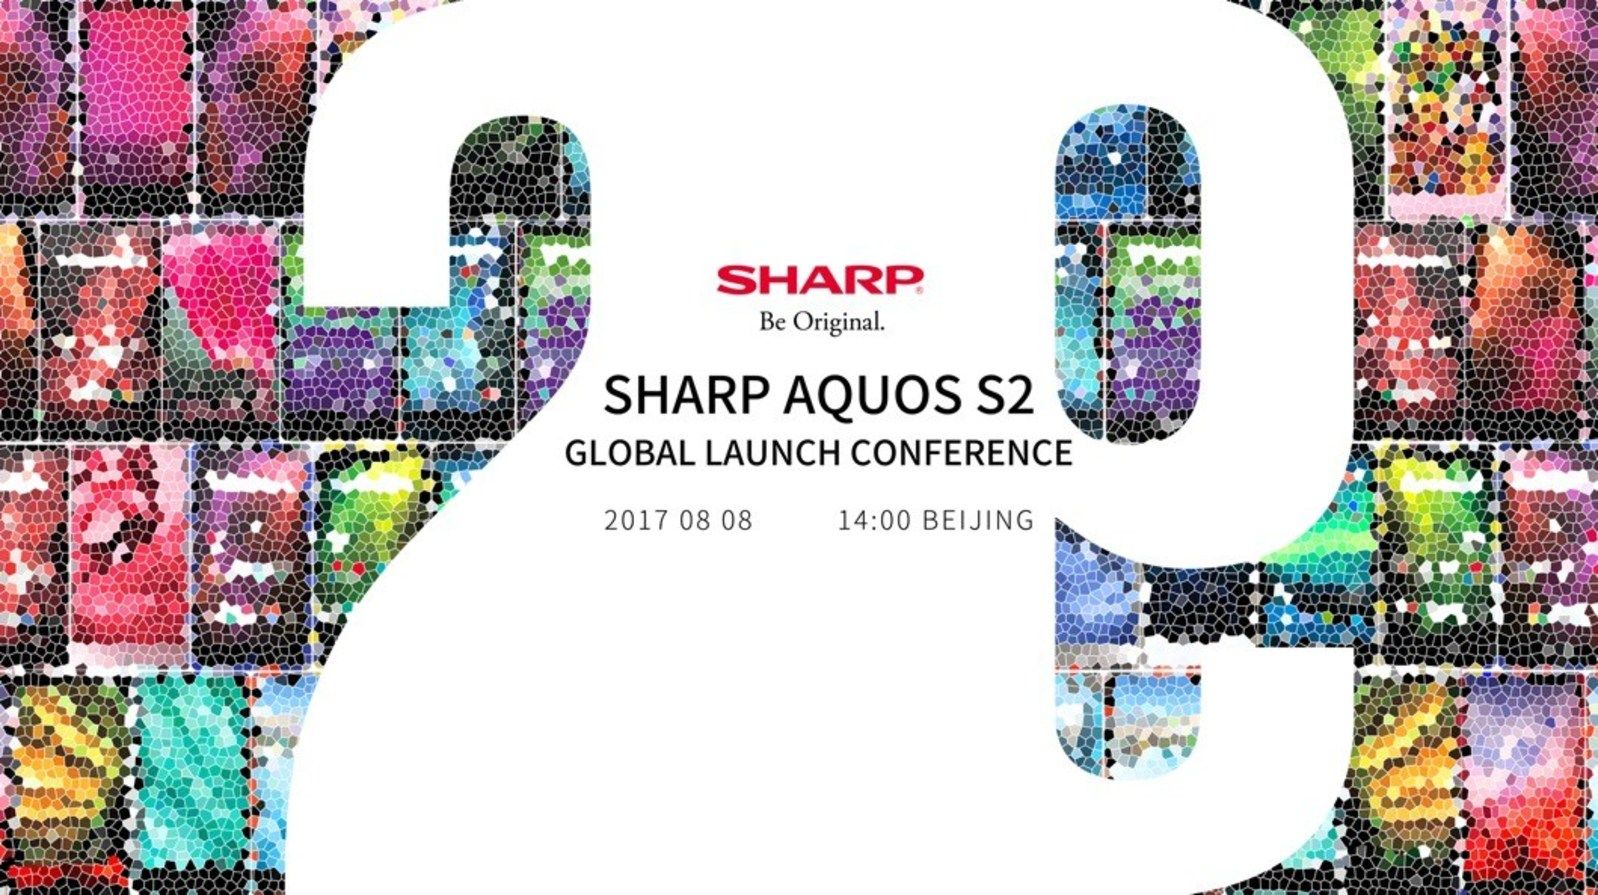 SHARP AQUOS S2 มือถือไร้ขอบพร้อมอัตราส่วนหน้าจอสูงสุด พร้อมเปิดตัวและวางจำหน่ายทั่วโลกกลางเดือนนี้